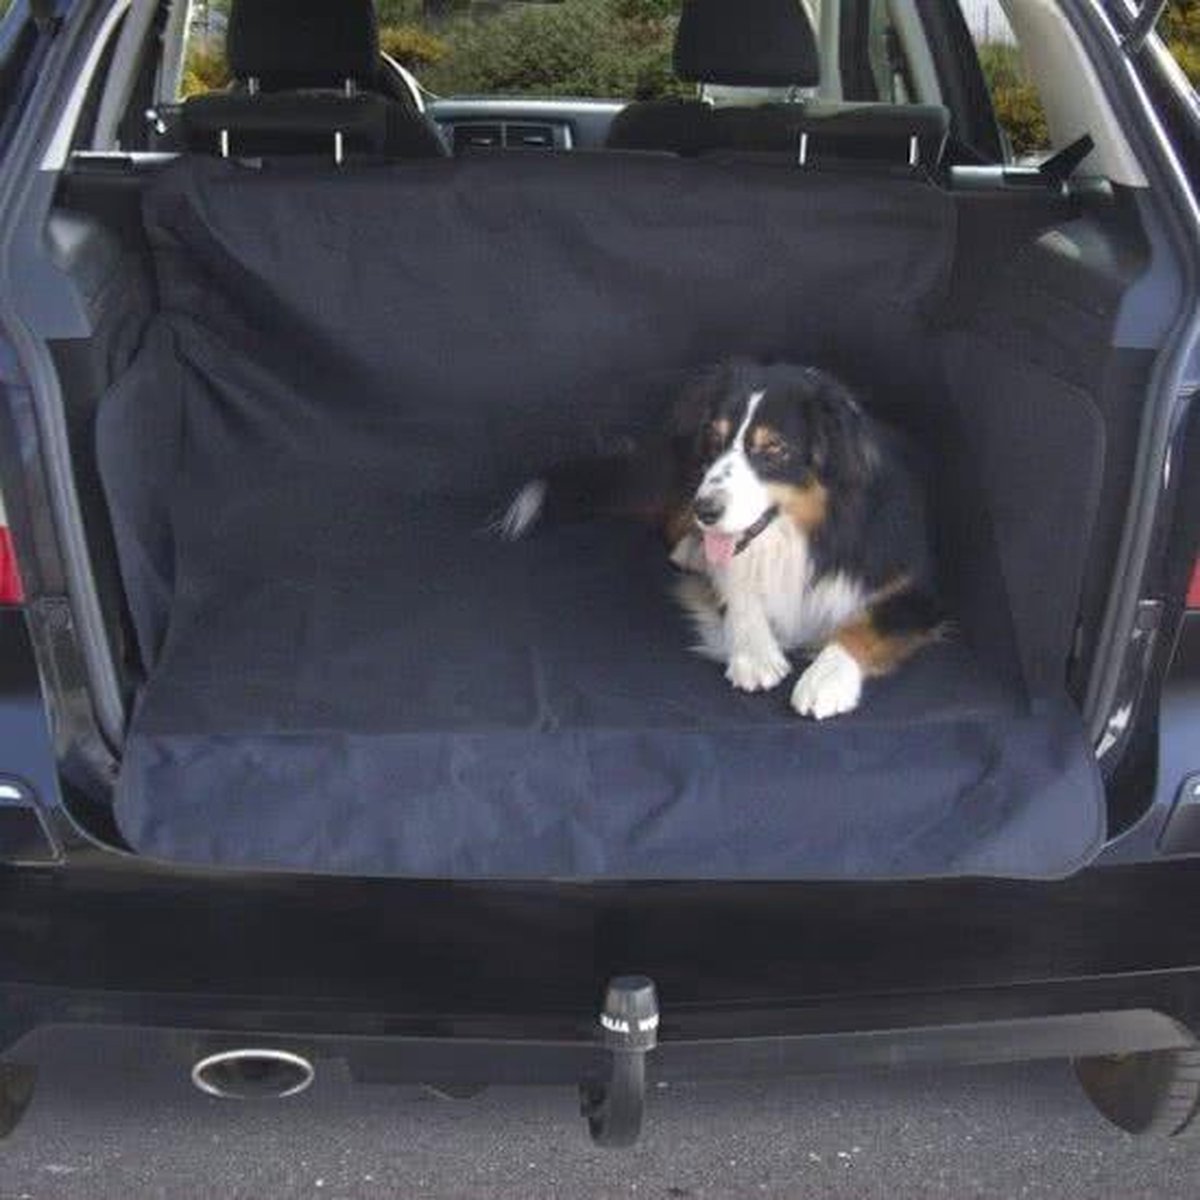 Beasty Auto Beschermhoes voor Kofferbak met Kliksluitingen - 146 x 146 cm - Zwart | Voor Honden | Tegen Vuil en Beschadigingen| Achterbank Hoes | Hondenkleed| Autodeken | Autobeschermhoes